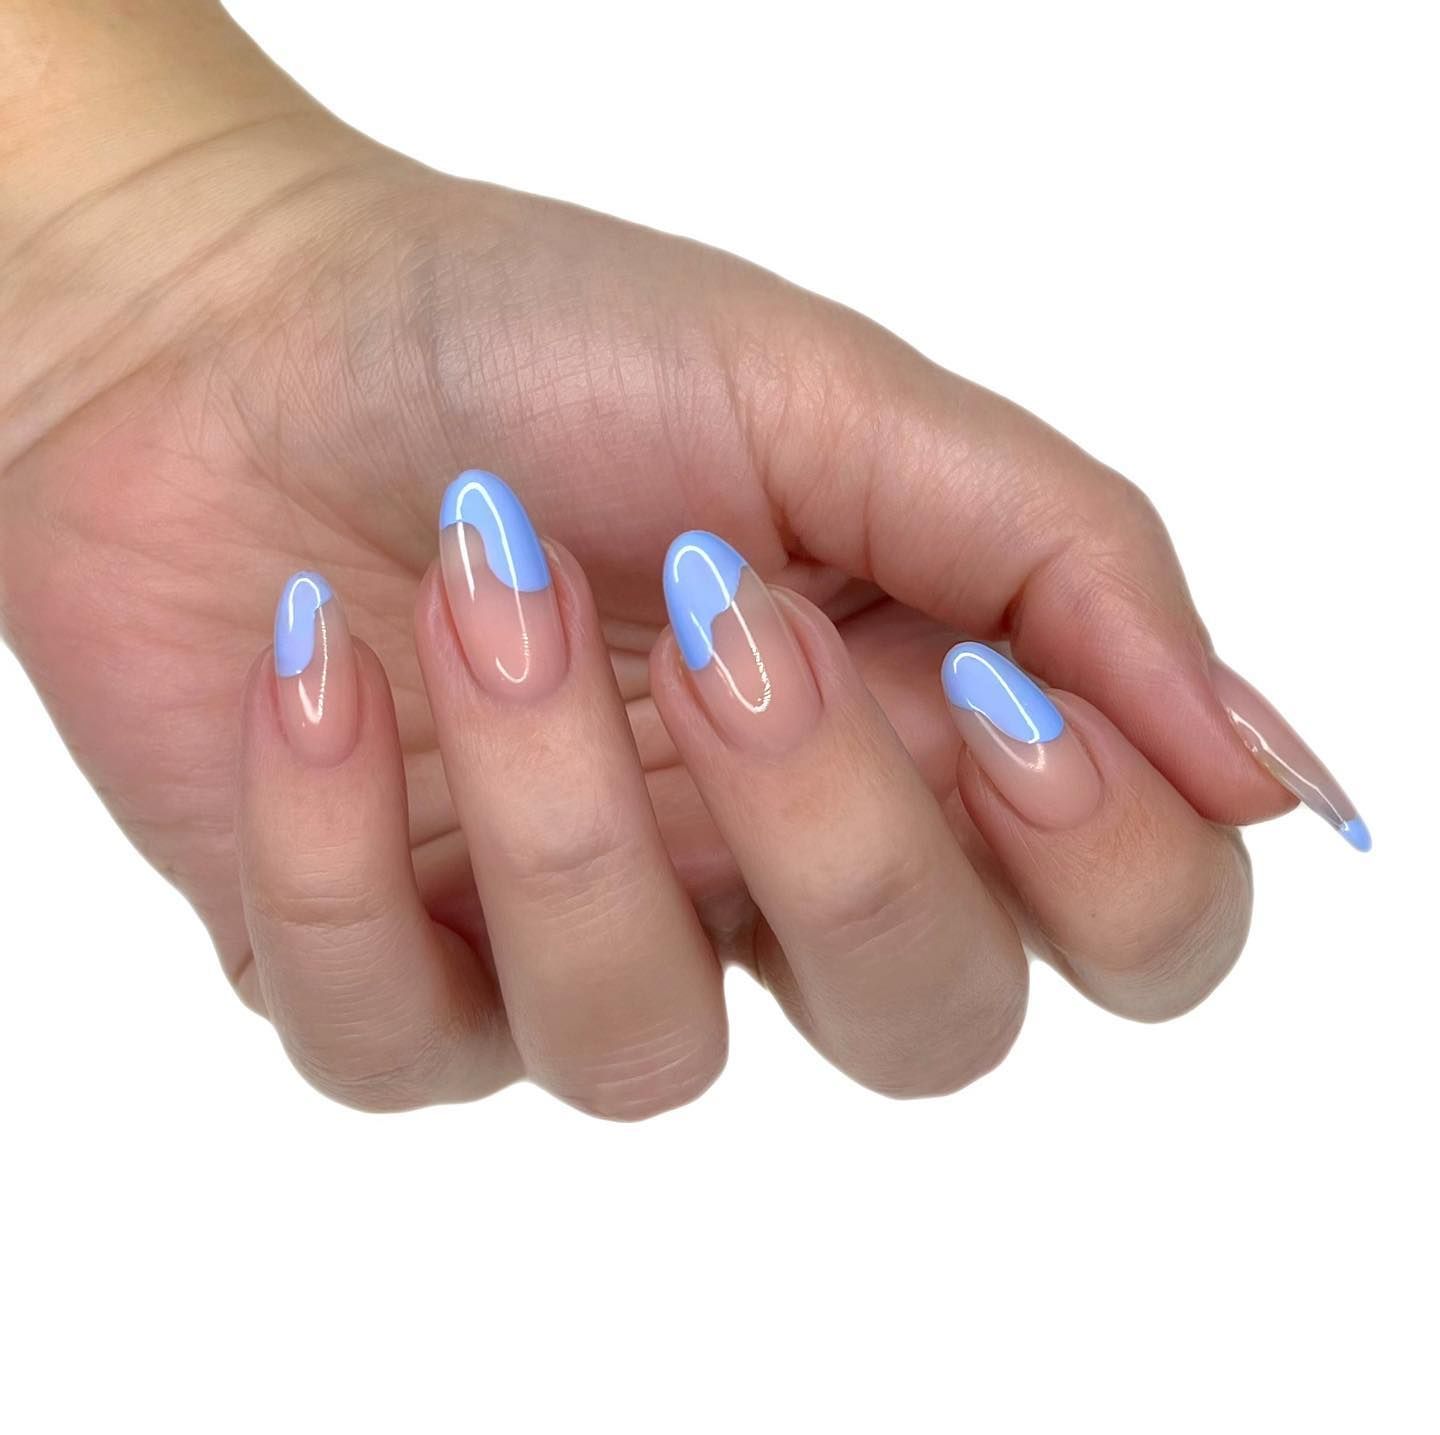 25 steps to make gel nails last longer | Nail Polish Direct